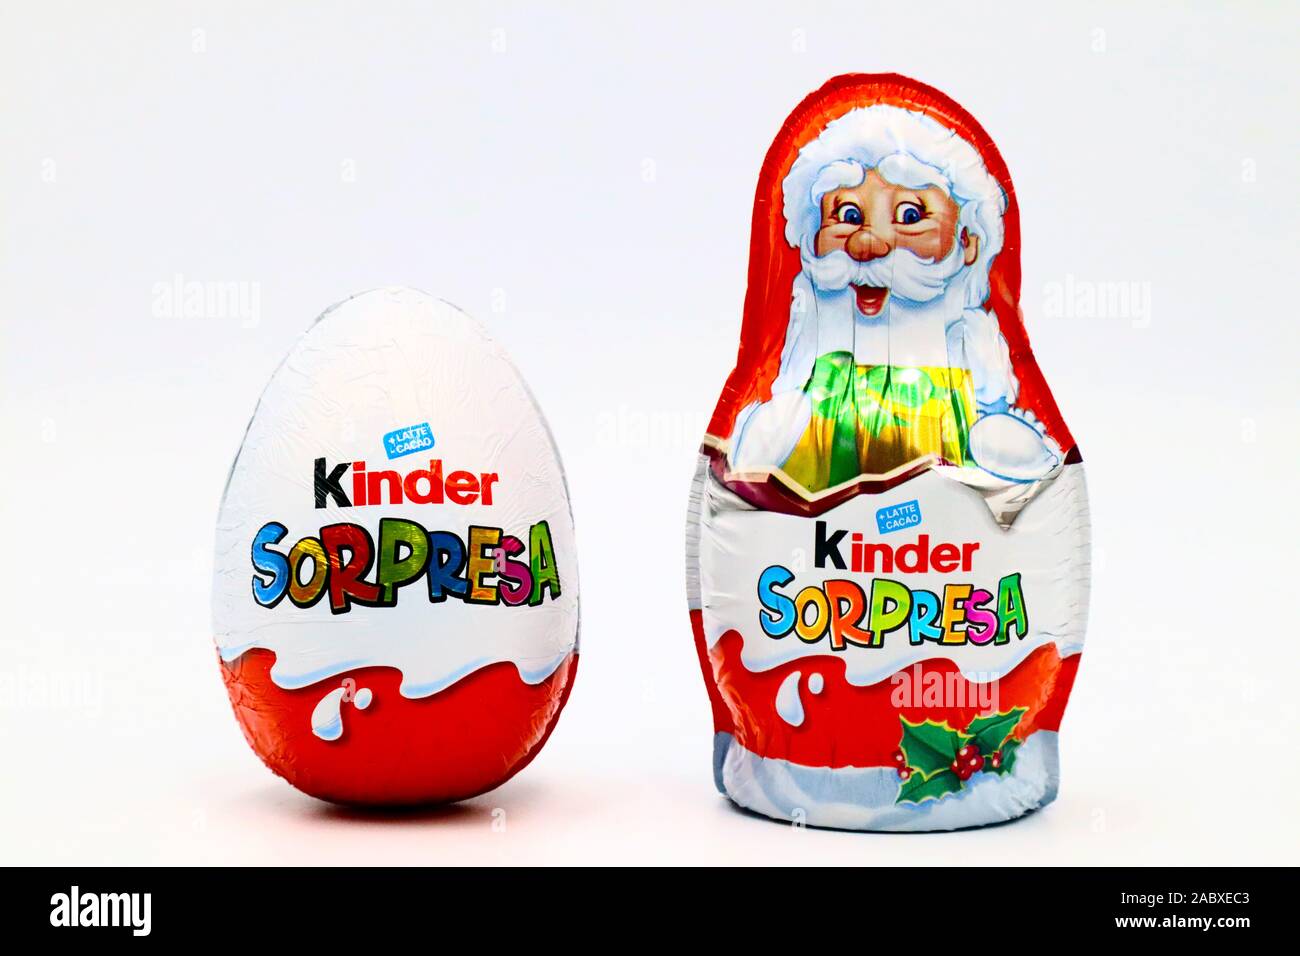 Kinder sorpresa los huevos de chocolate de temática navideña con Santa  Claus. Kinder sorpresa es una marca de productos fabricados en Italia por  Ferrero Fotografía de stock - Alamy